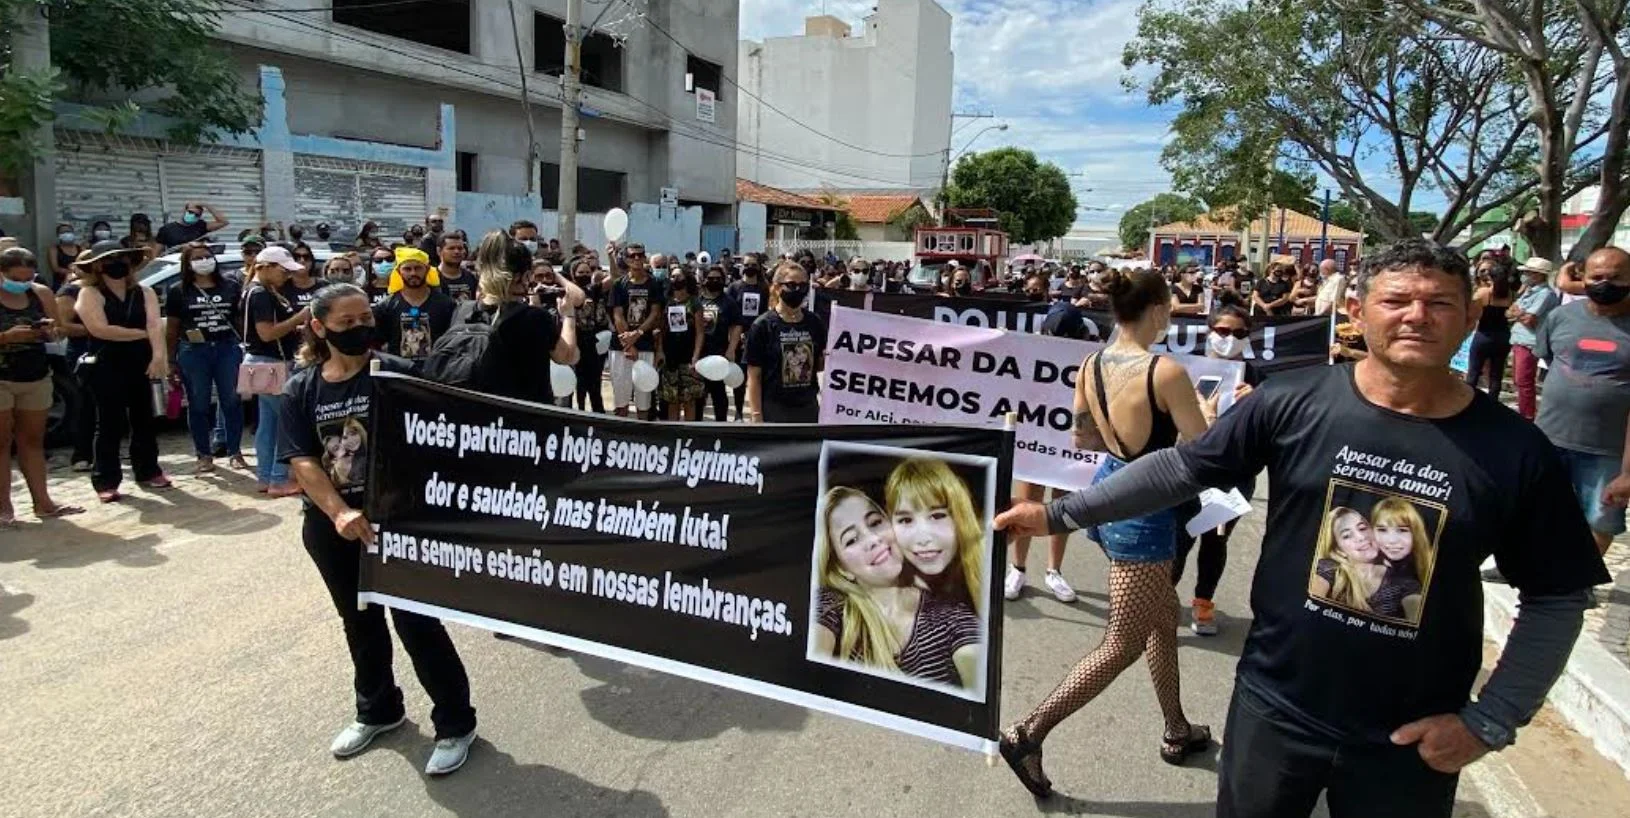 Passeata em luto e protesto por mortes de mãe e filha mobilizou manifestantes em Guanambi